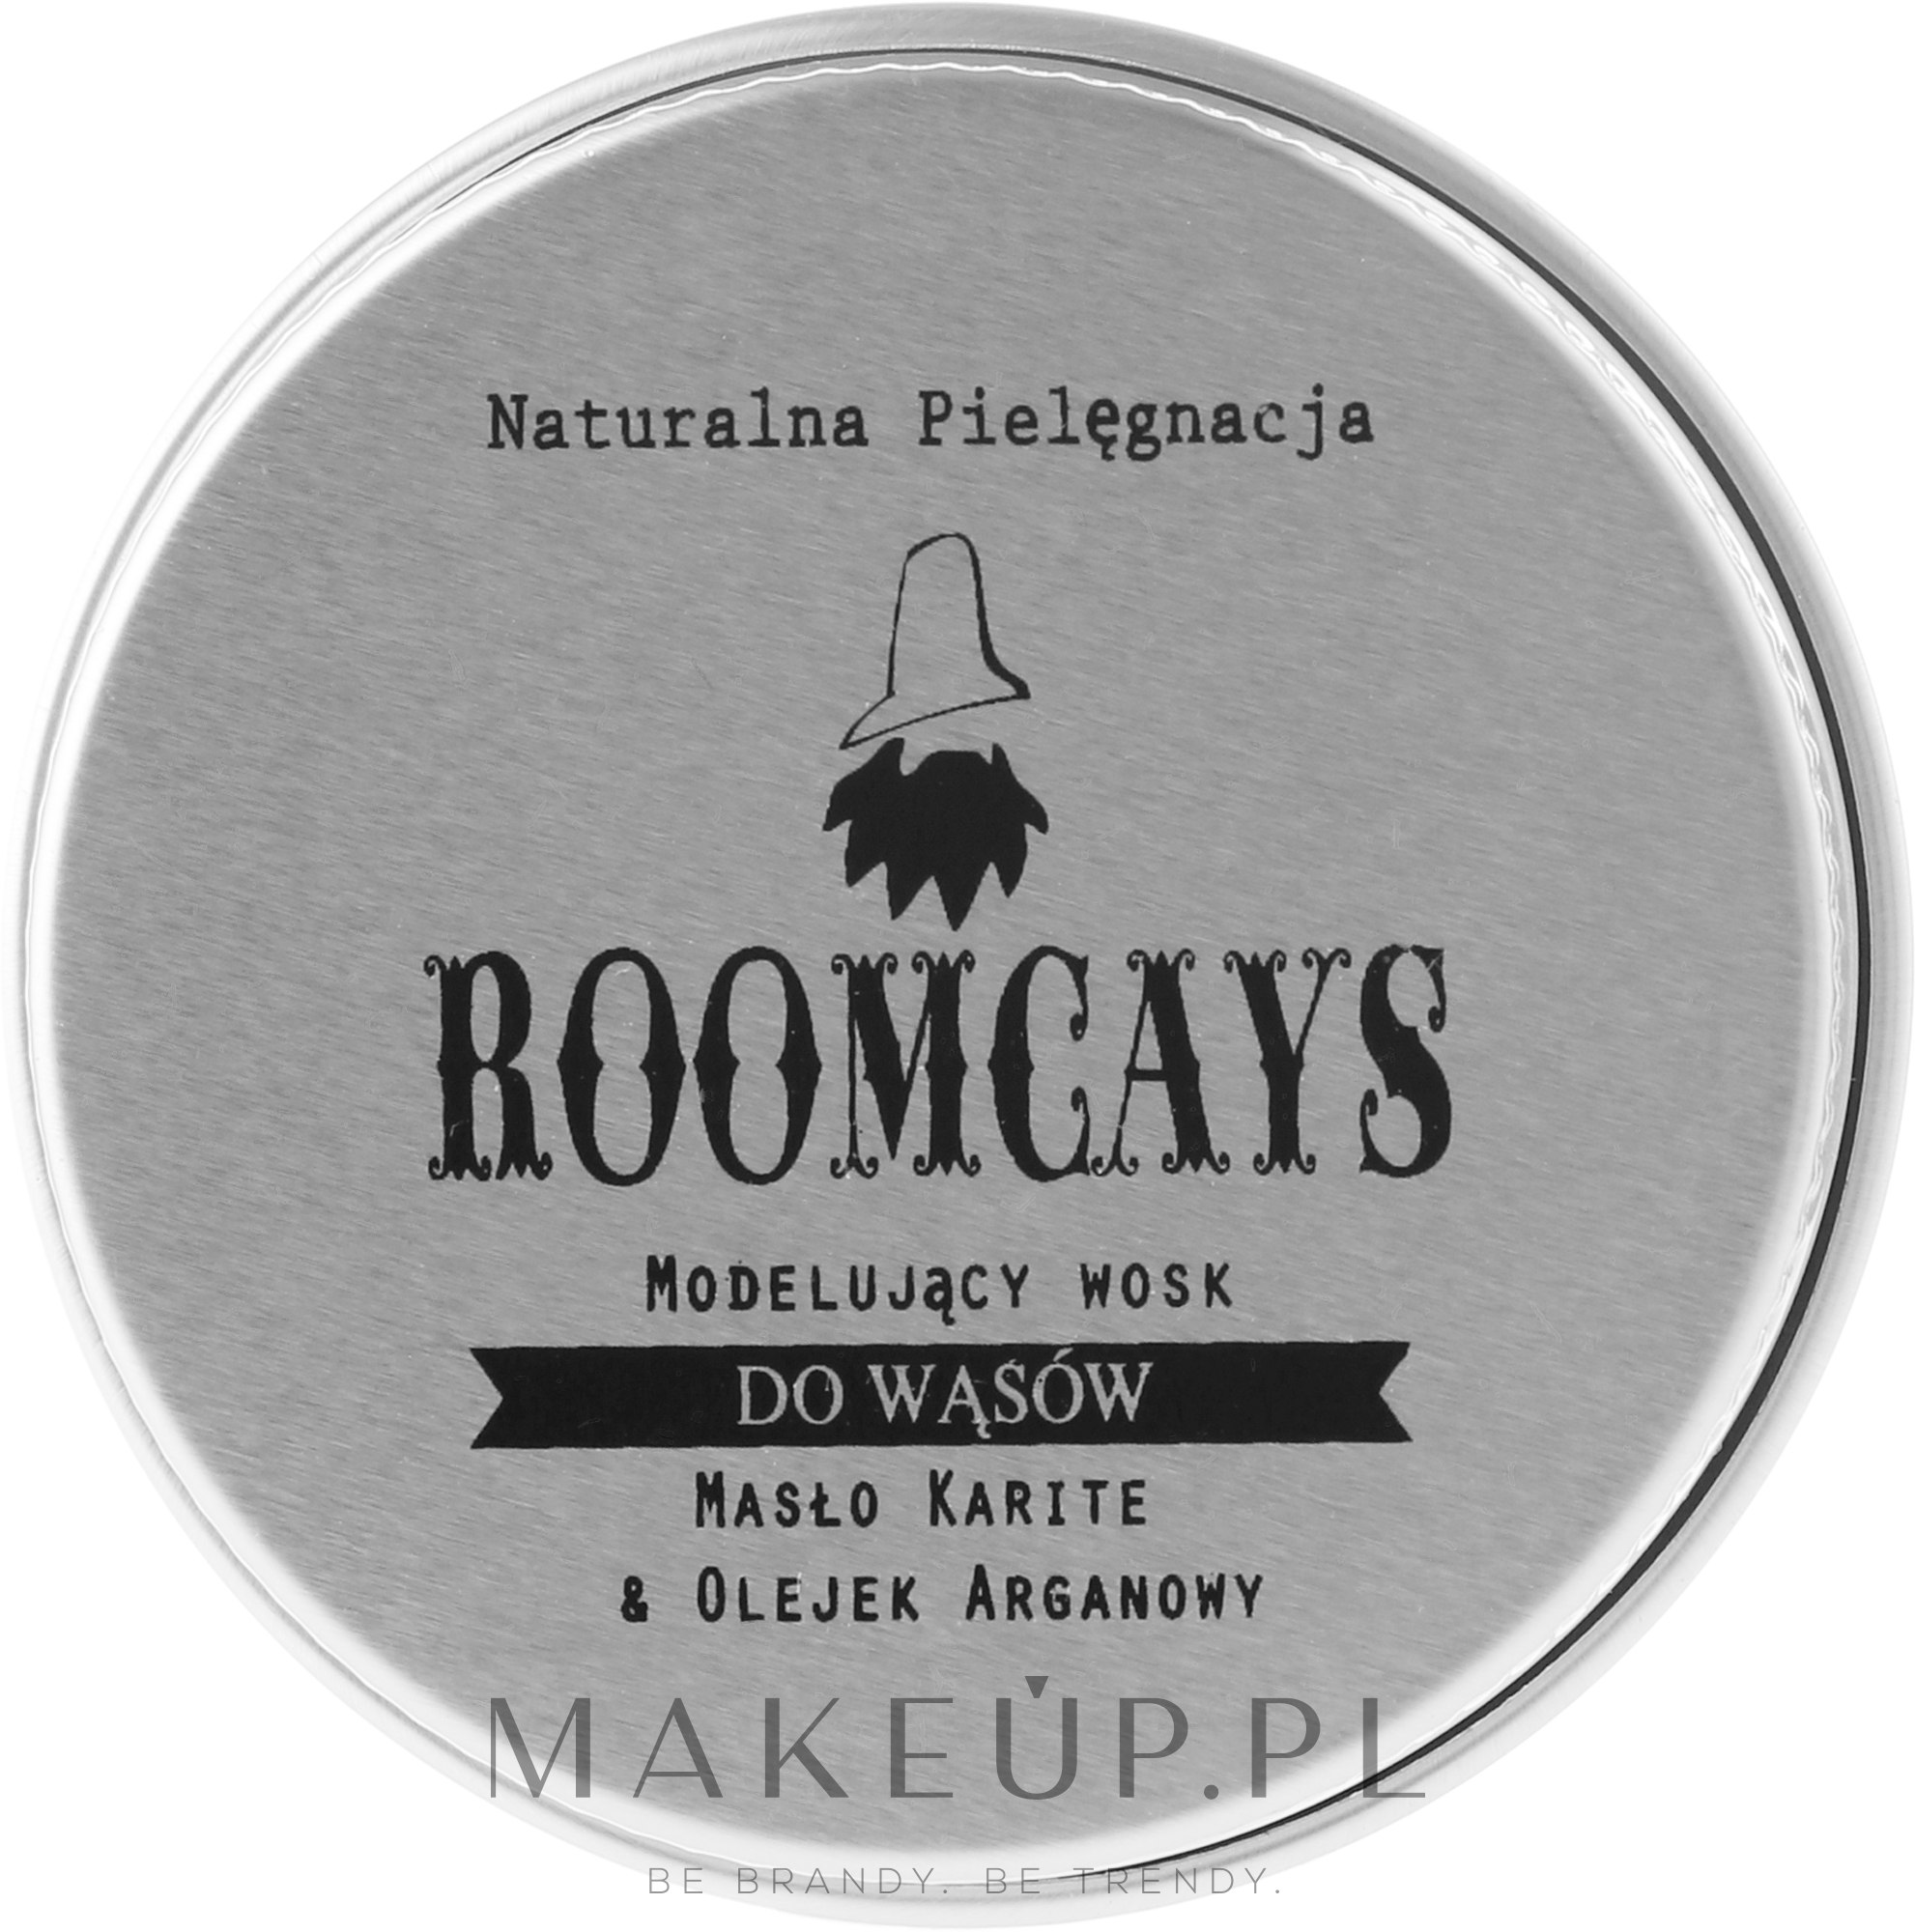 Modelujący wosk do wąsów Masło karite i olej arganowy - Roomcays — Zdjęcie 30 g